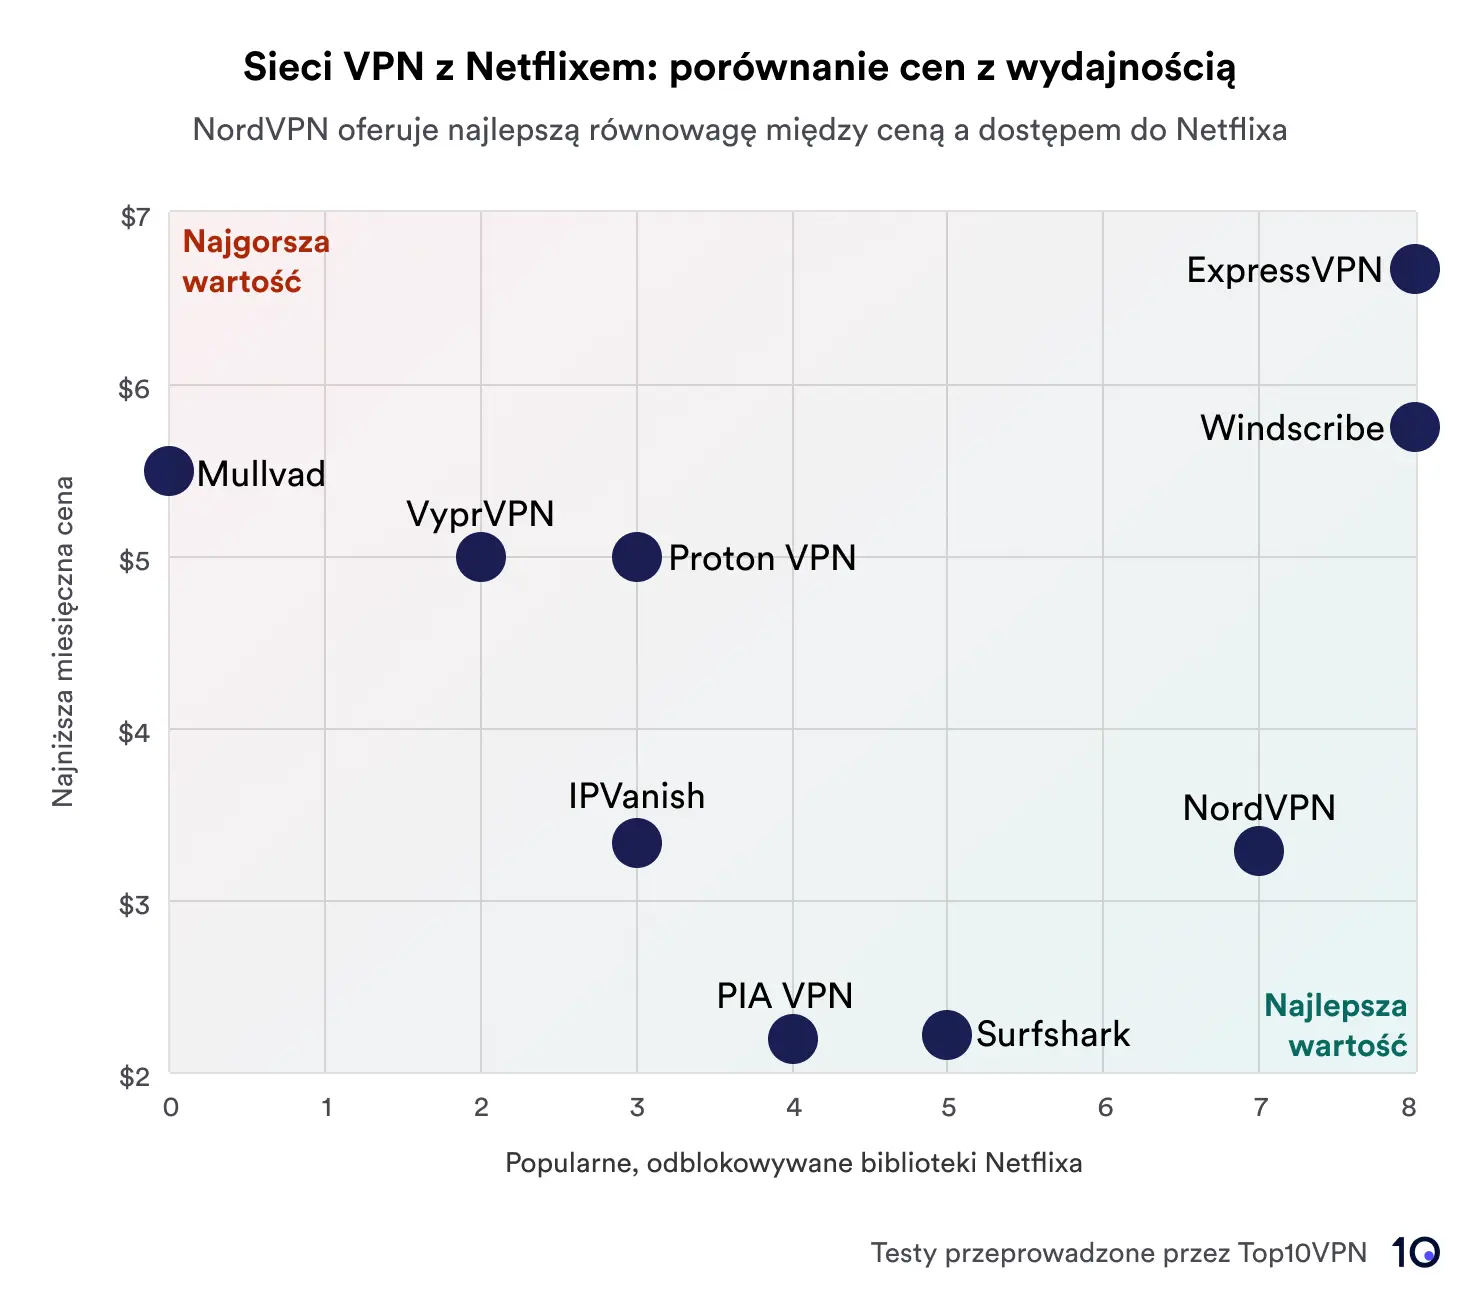 Wykres punktowy przedstawiający porównanie usług VPN na podstawie ceny i wydajności w odblokowywaniu bibliotek Netflix. NordVPN i CyberGhost zostały wyróżnione jako oferujące najlepszą wartość, co zostało zaznaczone w obszarze oznaczonym jako „Najlepsza wartość”. Dla kontrastu Mullvad pojawia się w „Worst Value”; obszarze ze względu na wyższą cenę i mniejszą liczbę dostępnych bibliotek